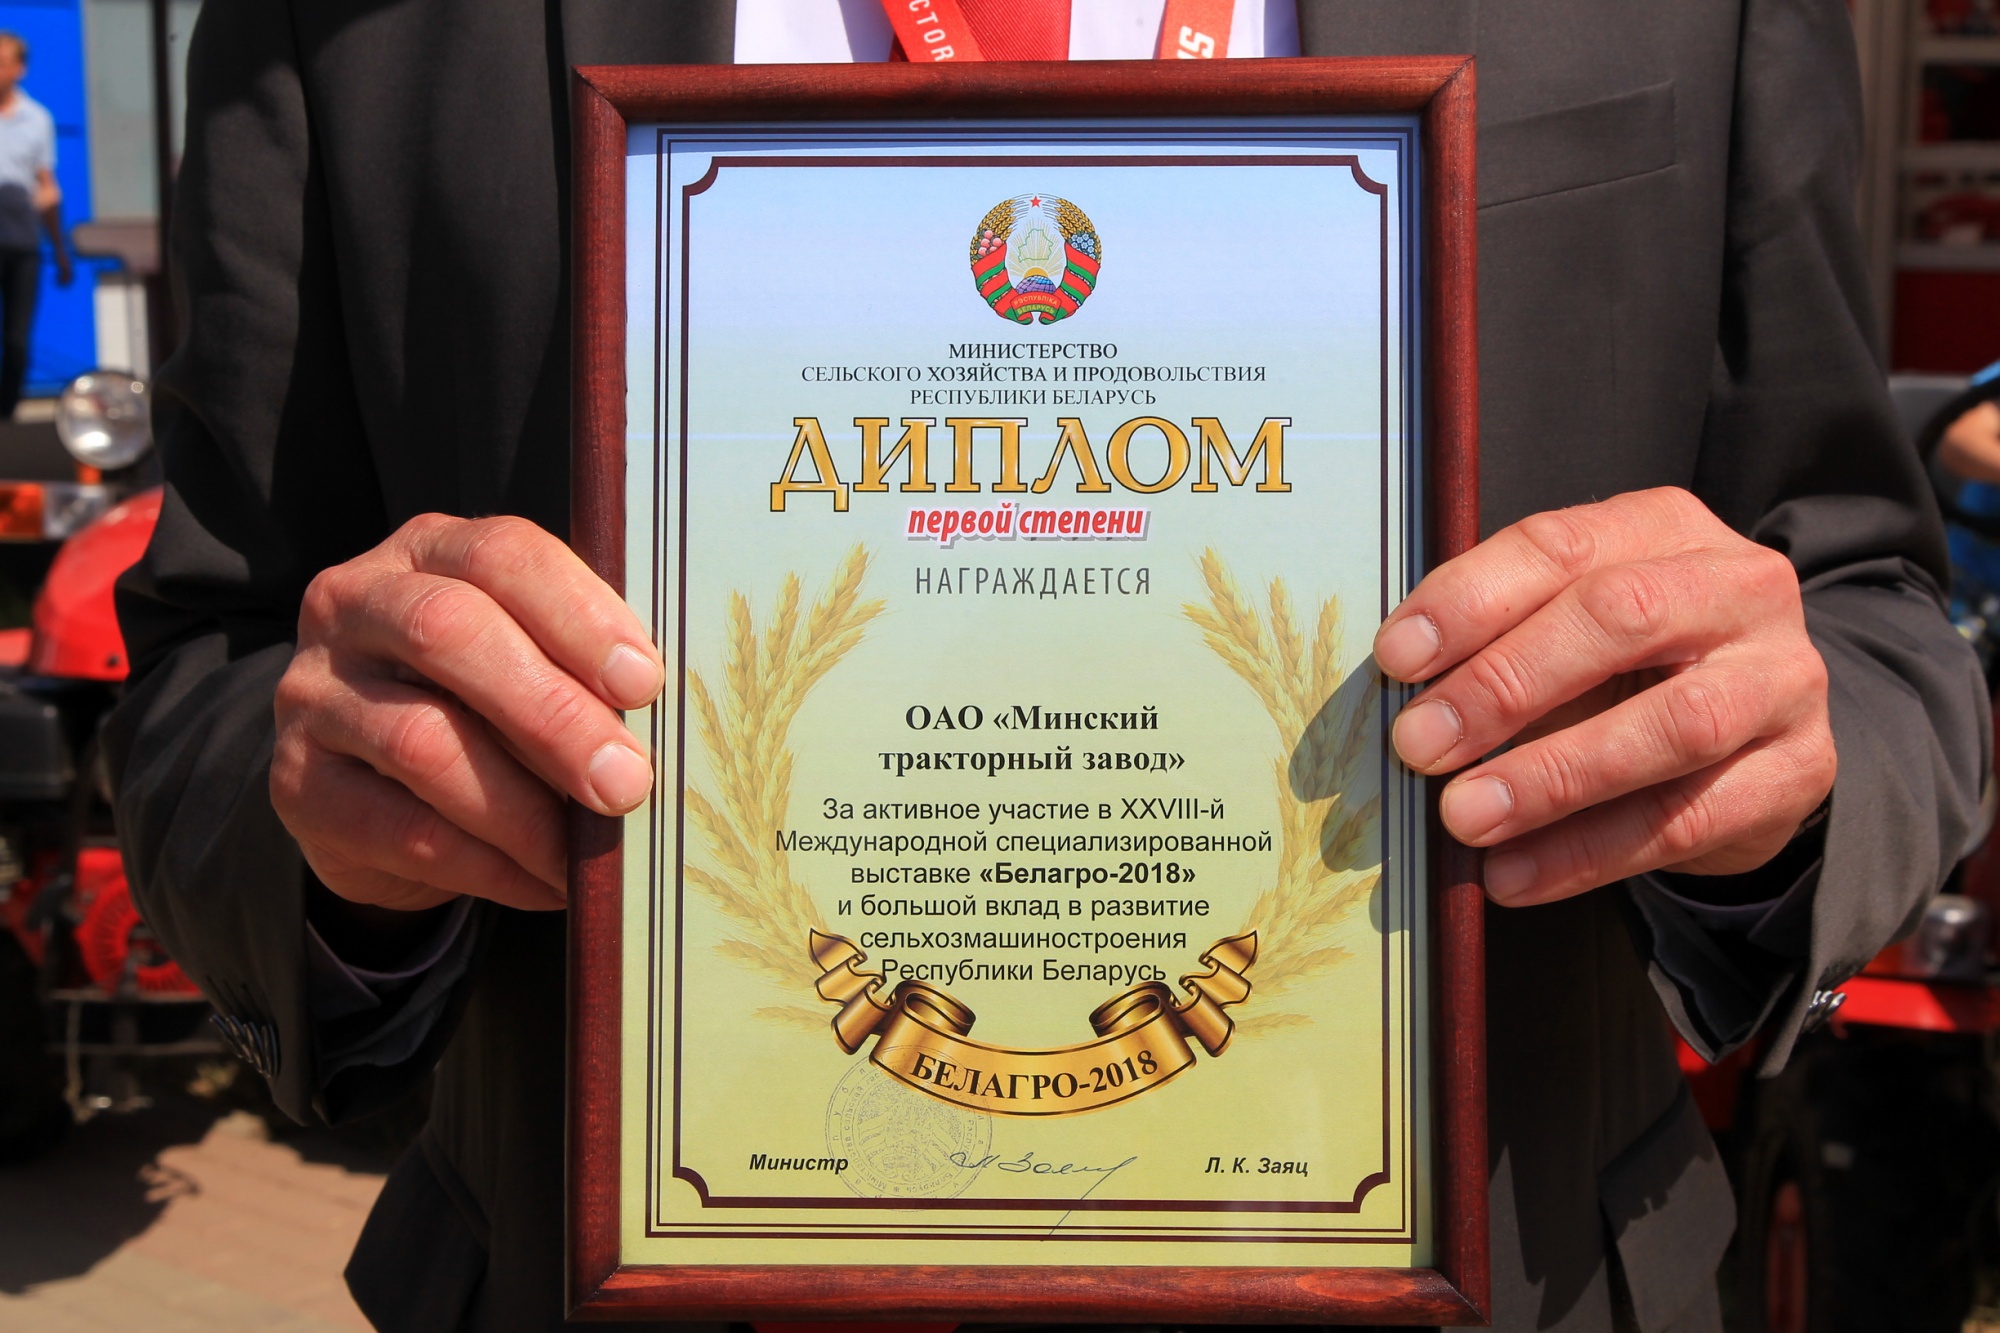 Диплом I степени за вклад в развитие сельхозмашиностроения страны»